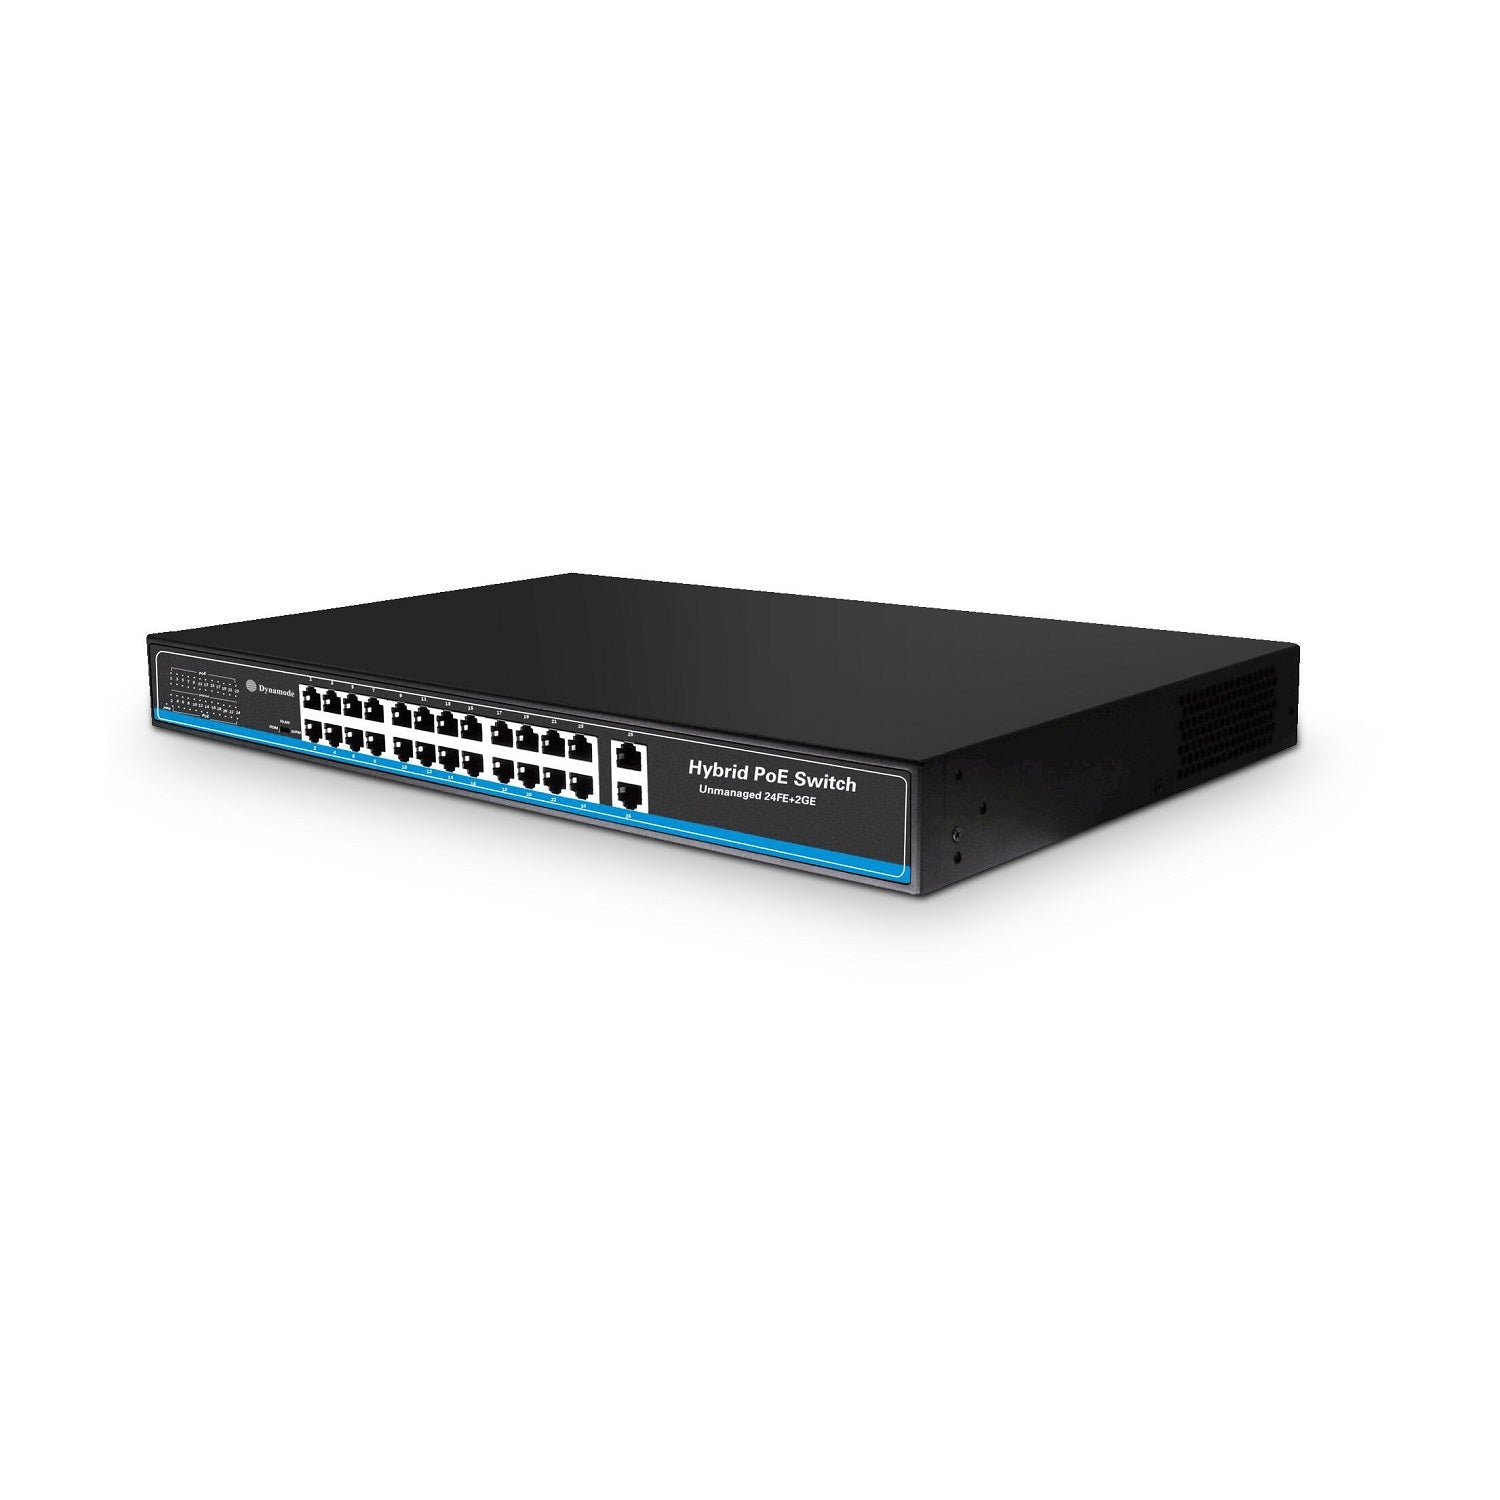 24 Port Fast Ethernet 10/100 Rackmount PoE Switch + 2 Gigabit Uplinks